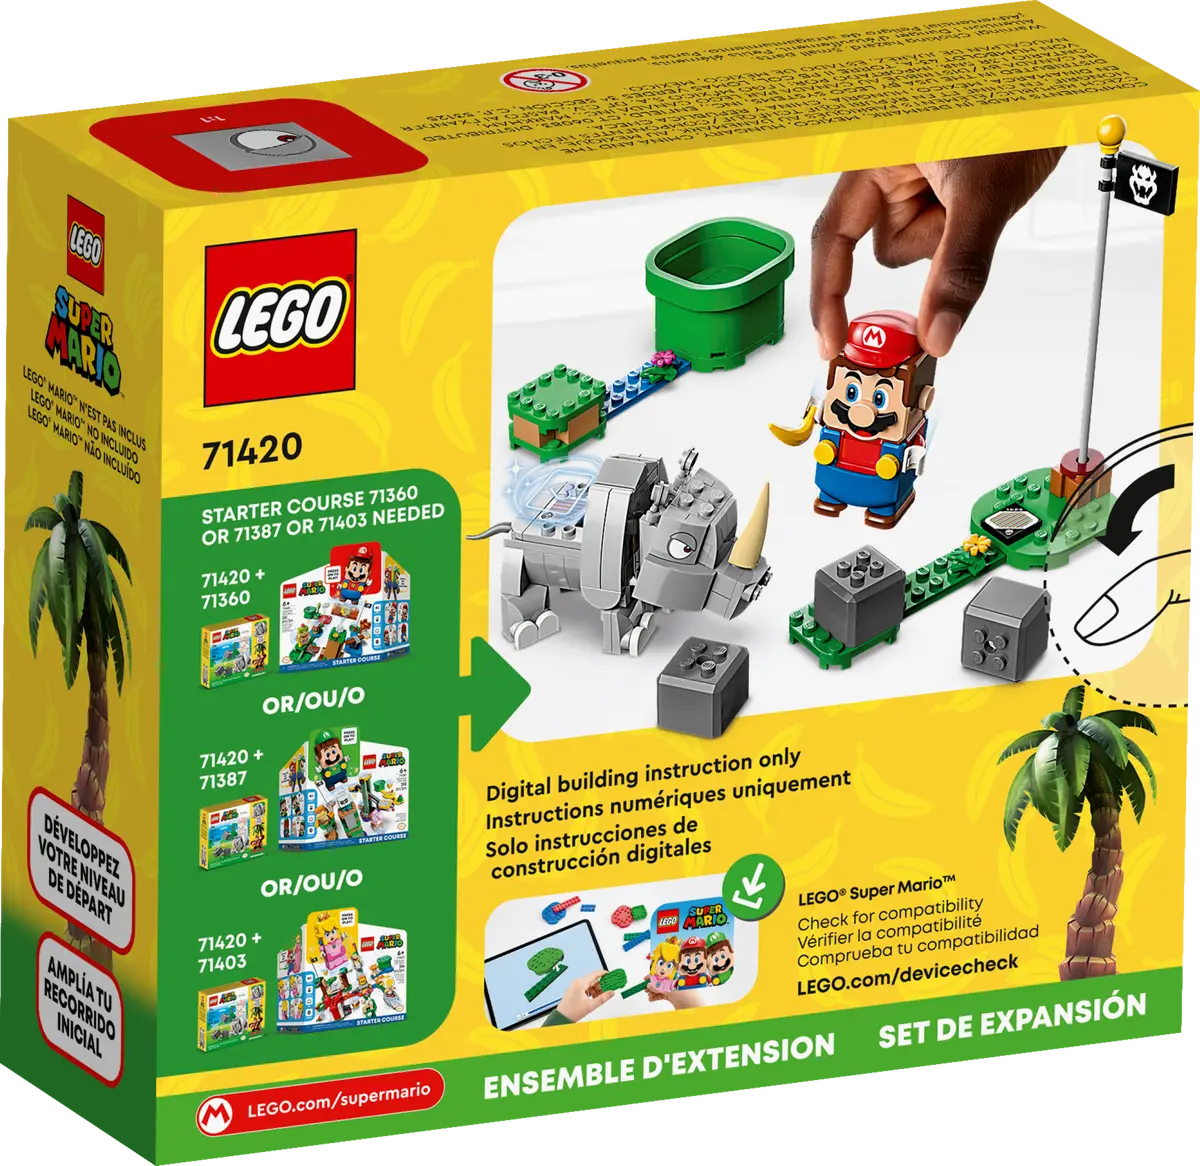 71420 LEGO Super Mario - Pack di espansione Rambi il rinoceronte